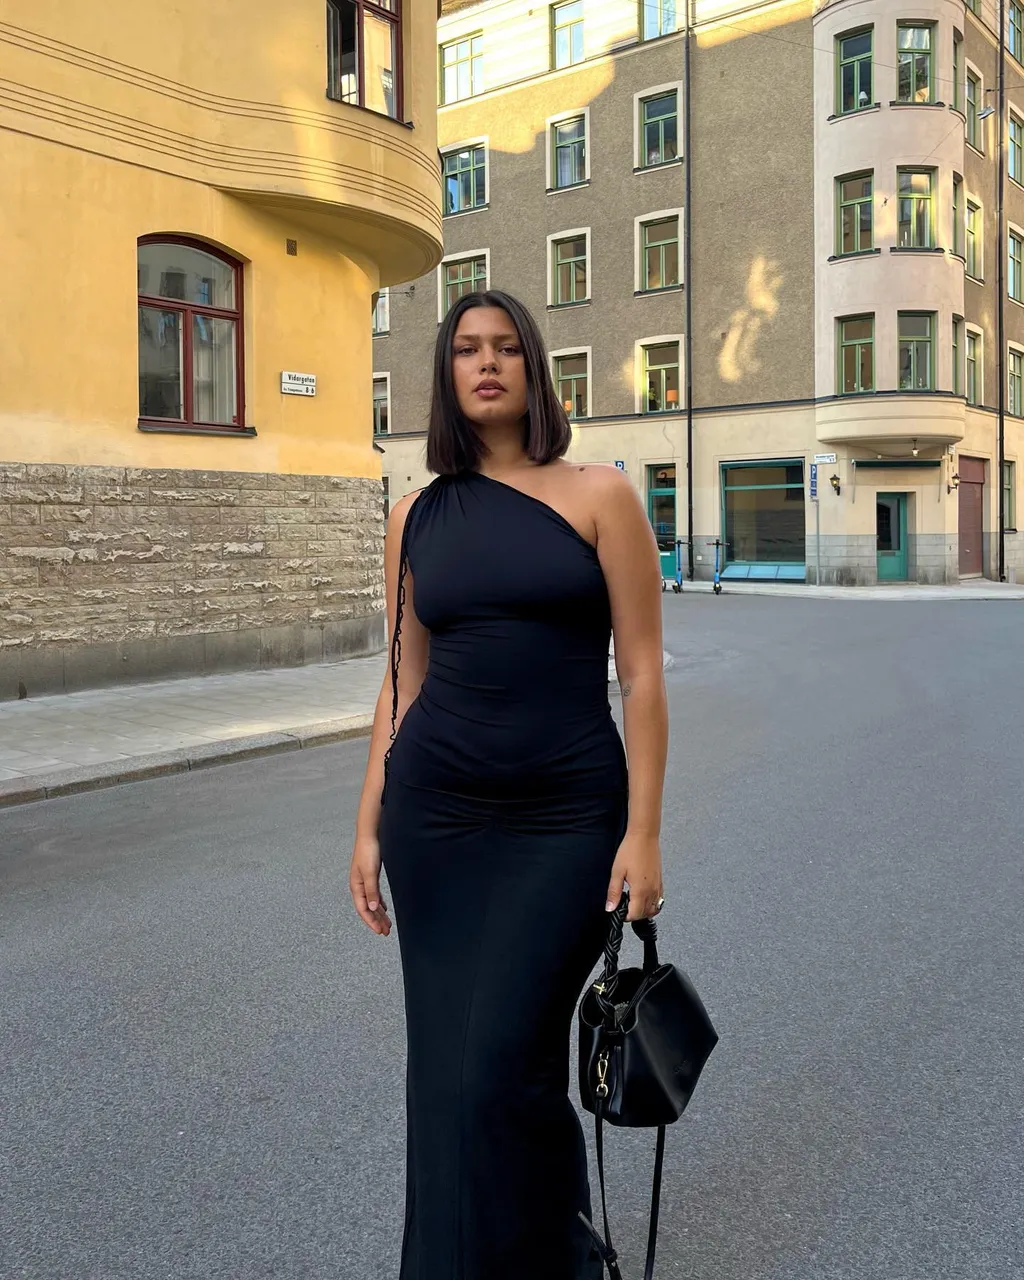 One-Shoulder Black Dress + Top-Handle Bag